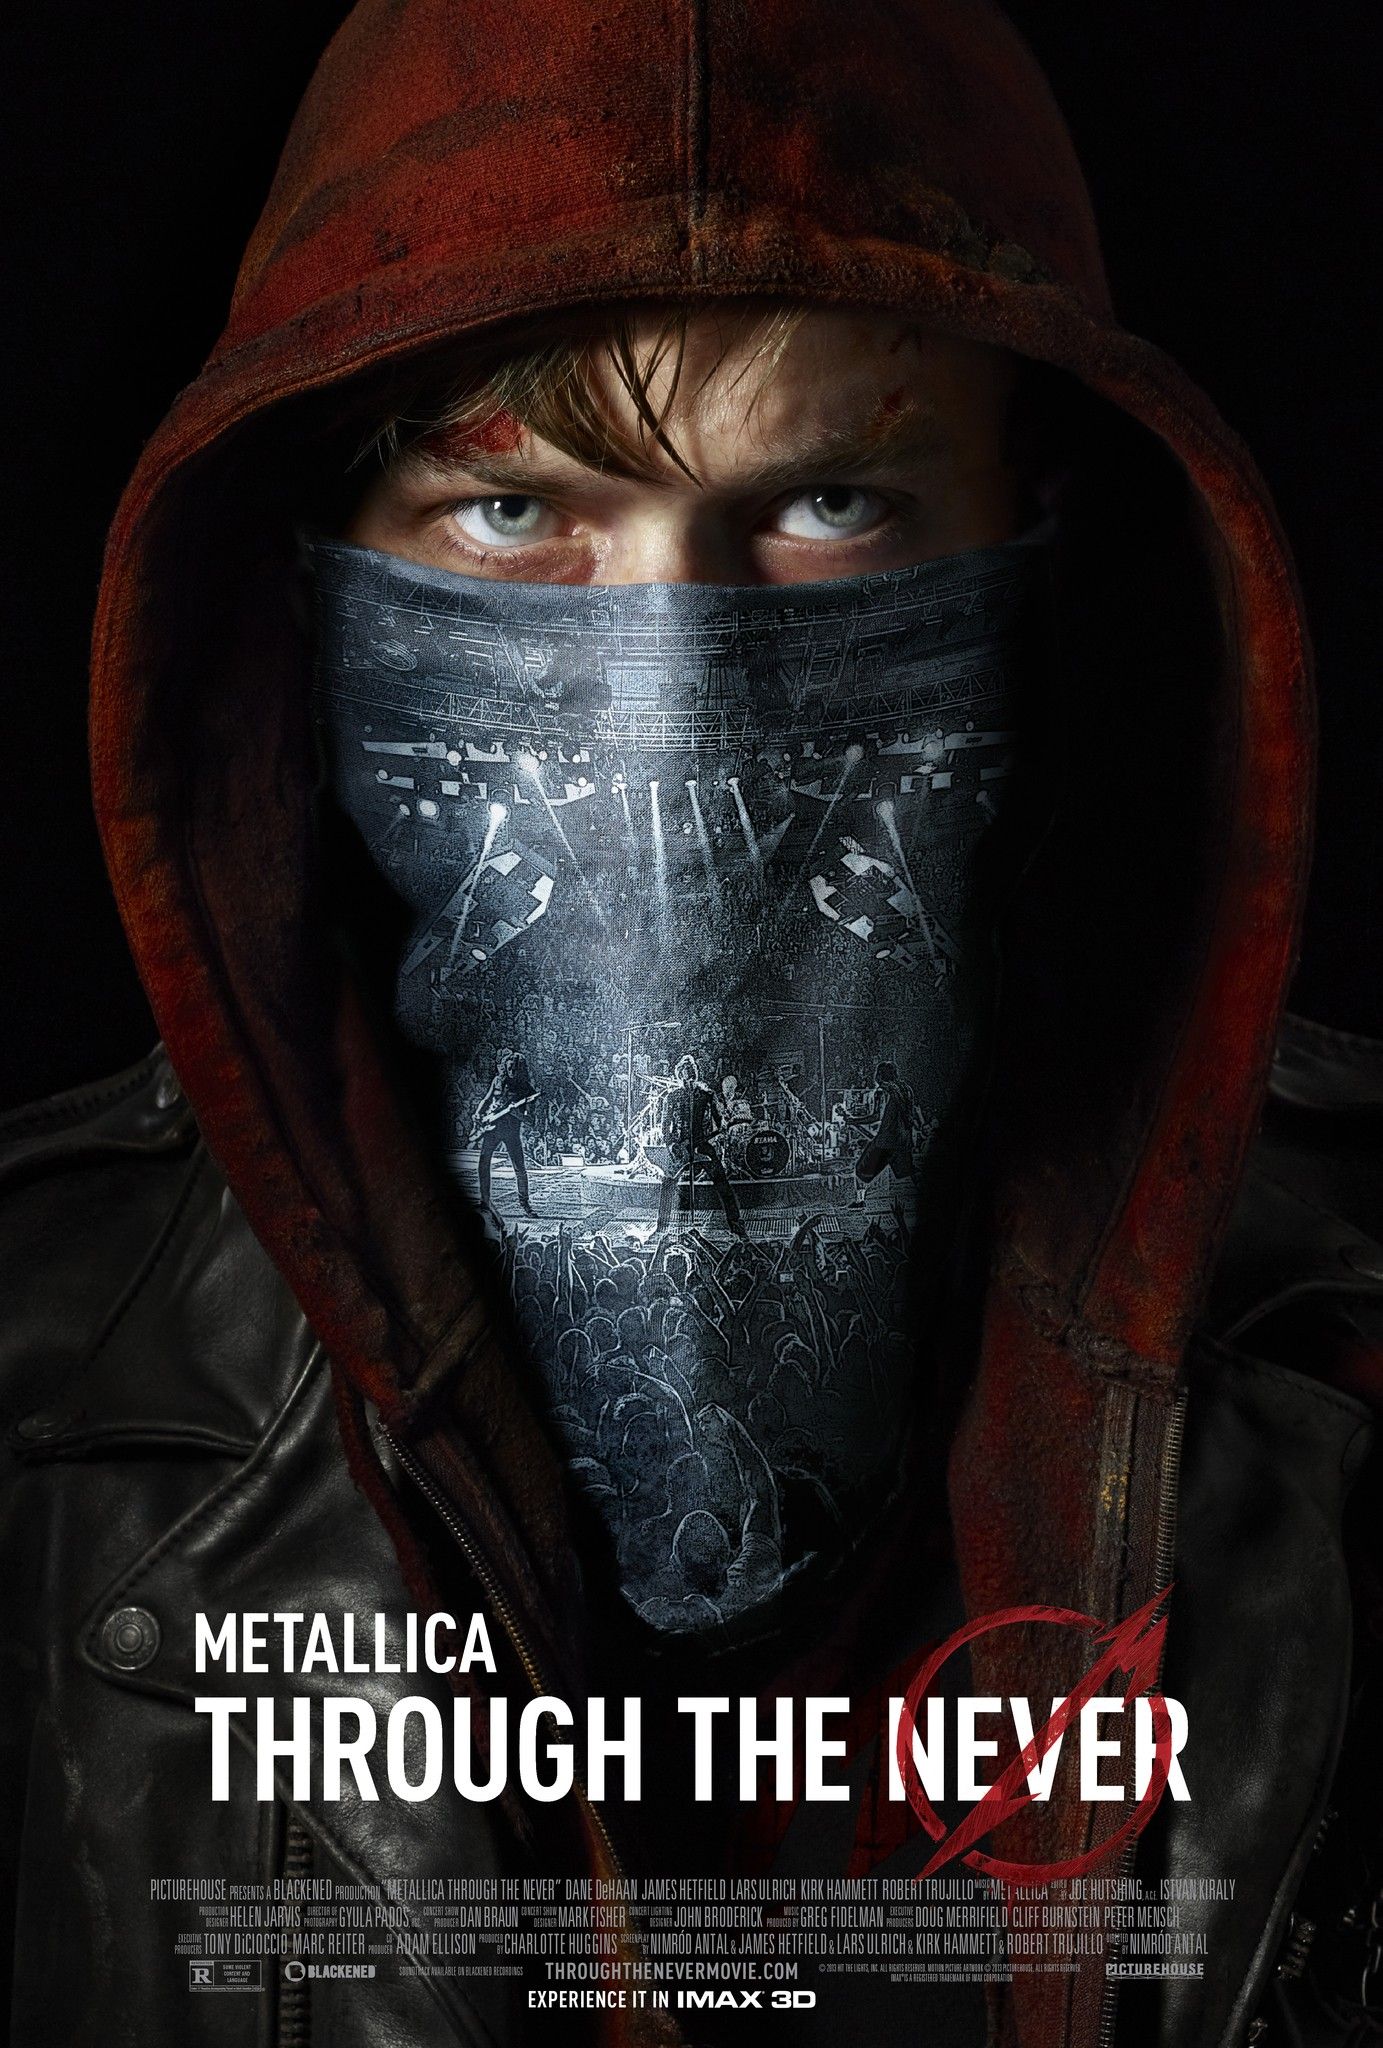 Metallica Through The Never Comic-Con Poster